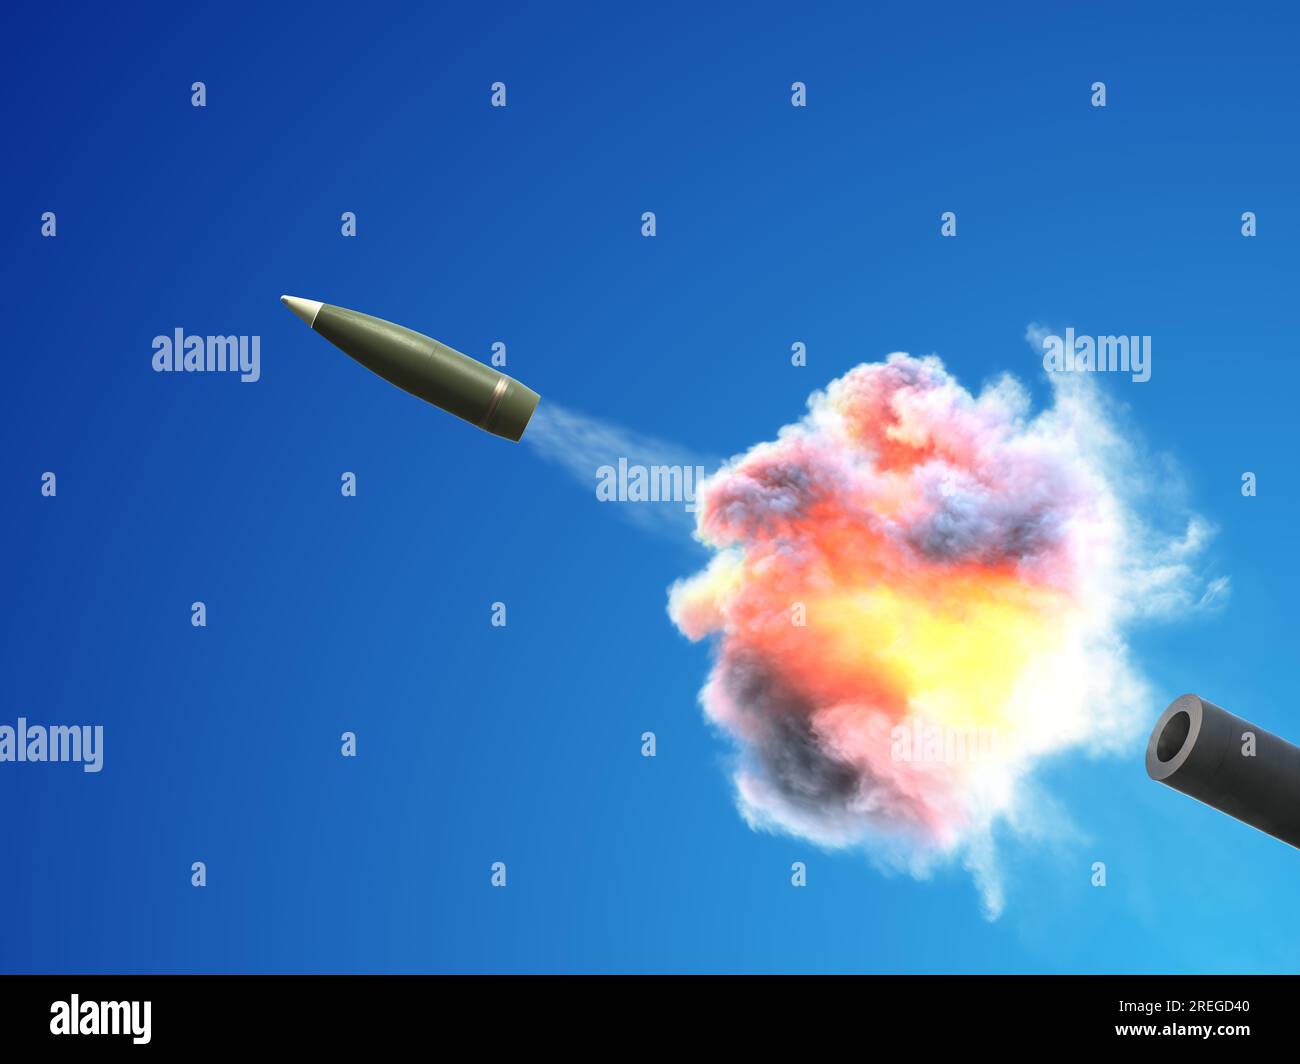 Vol d'un projectile lors d'un tir d'un canon. illustration 3d. Banque D'Images